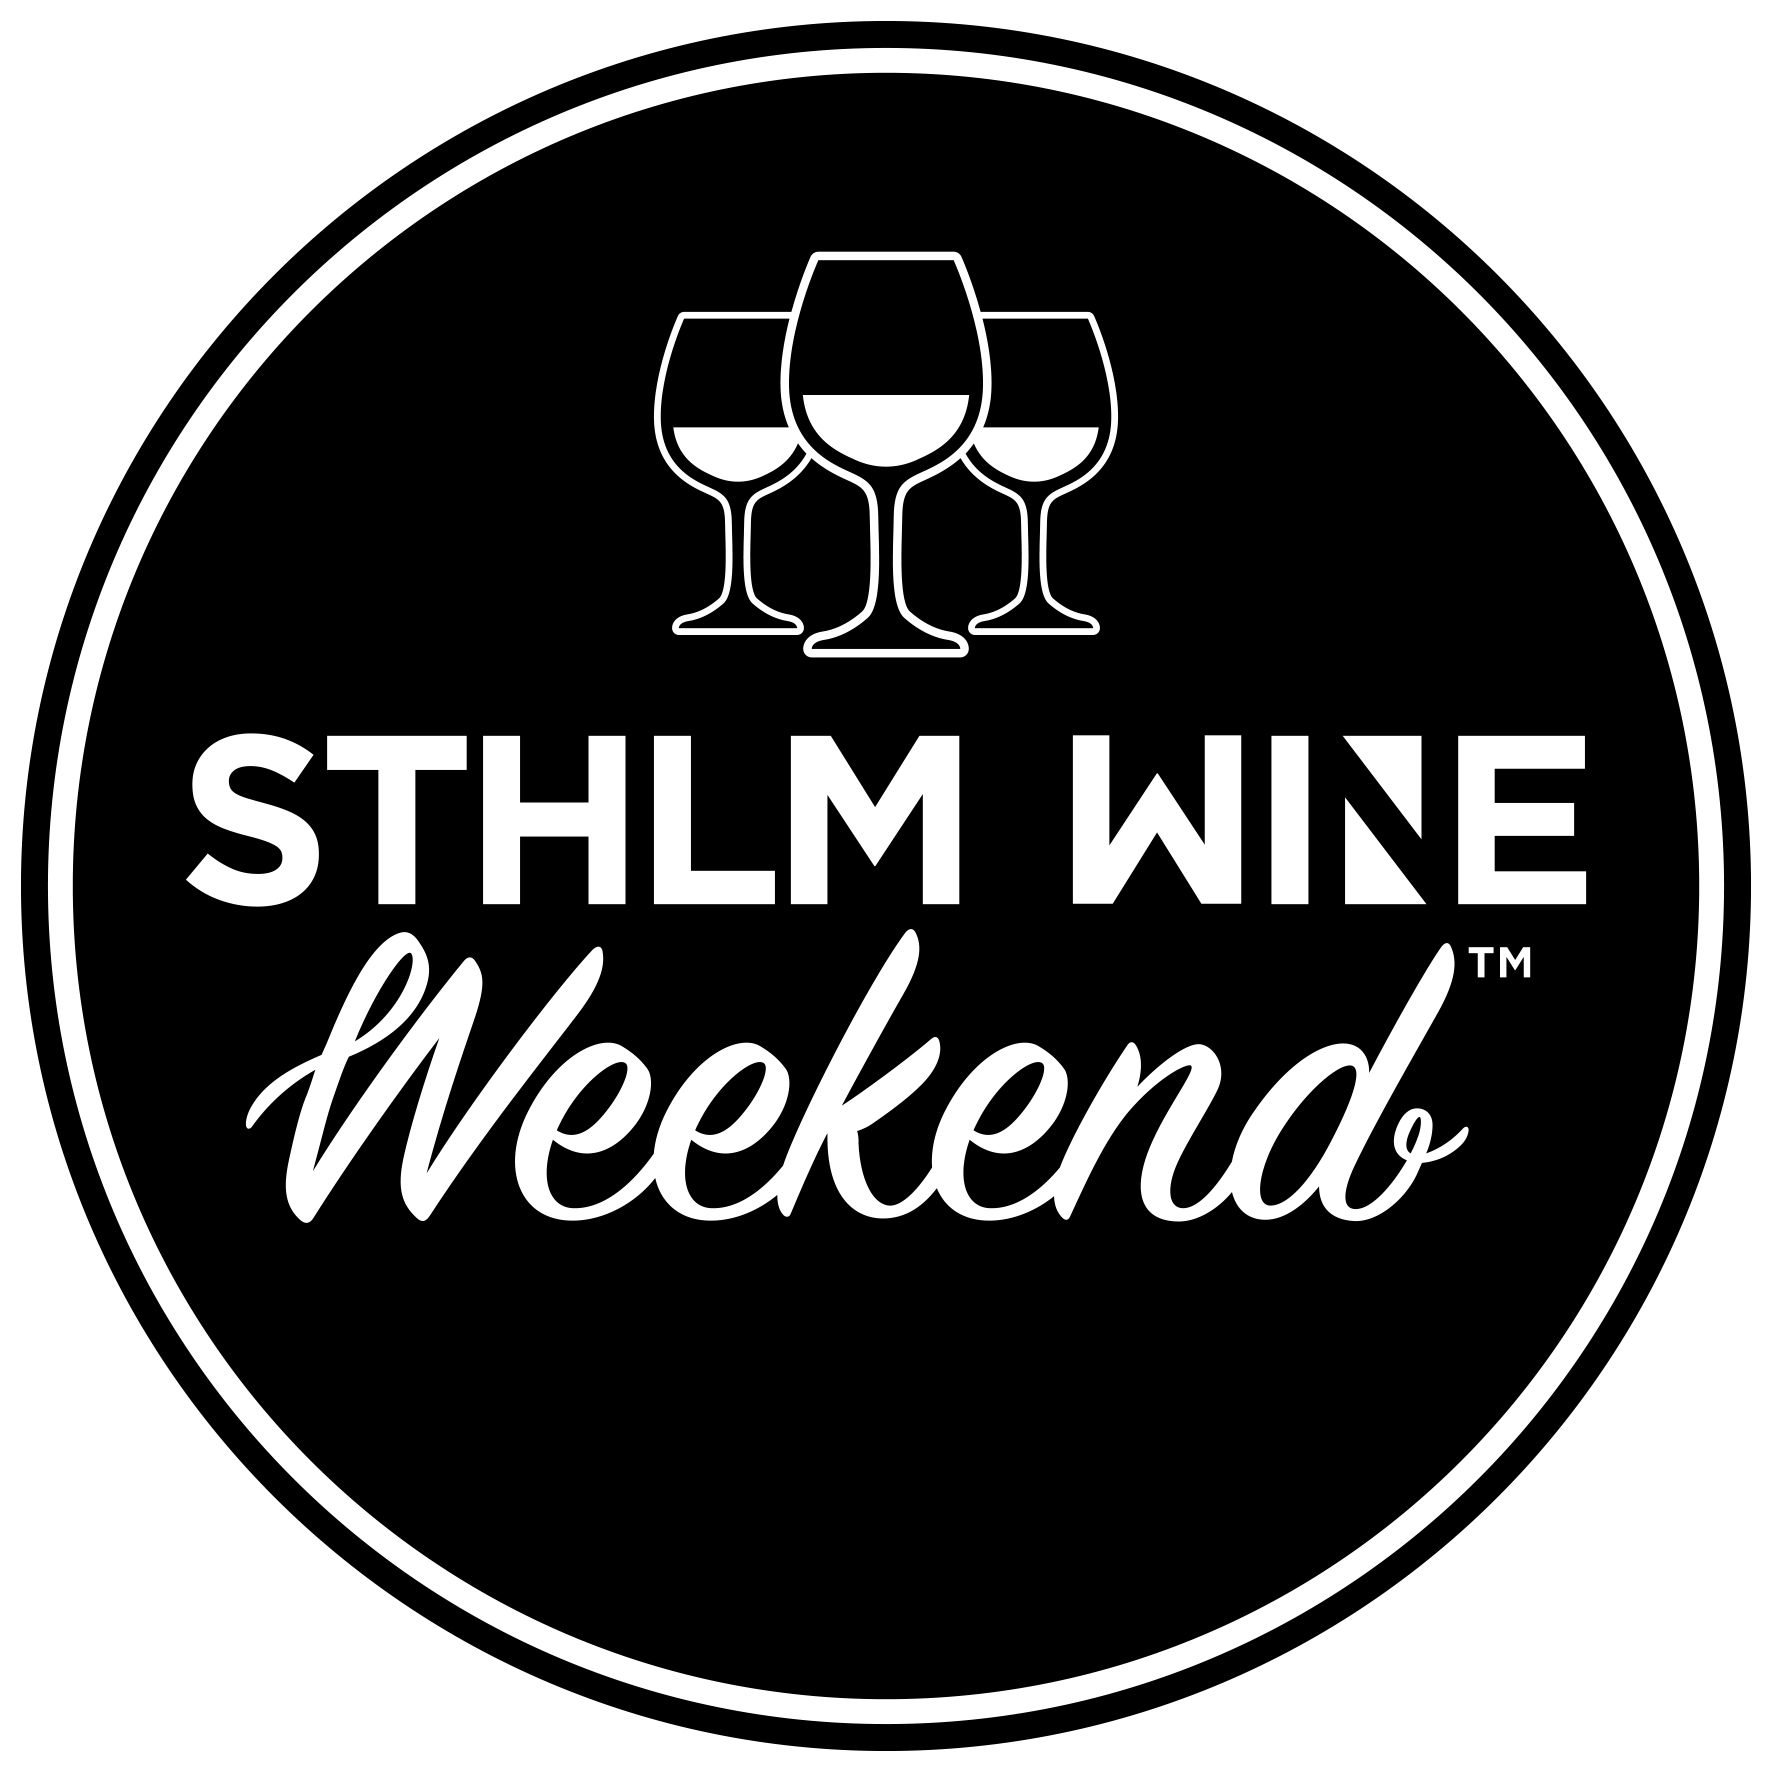 STHLM WINE Weekend